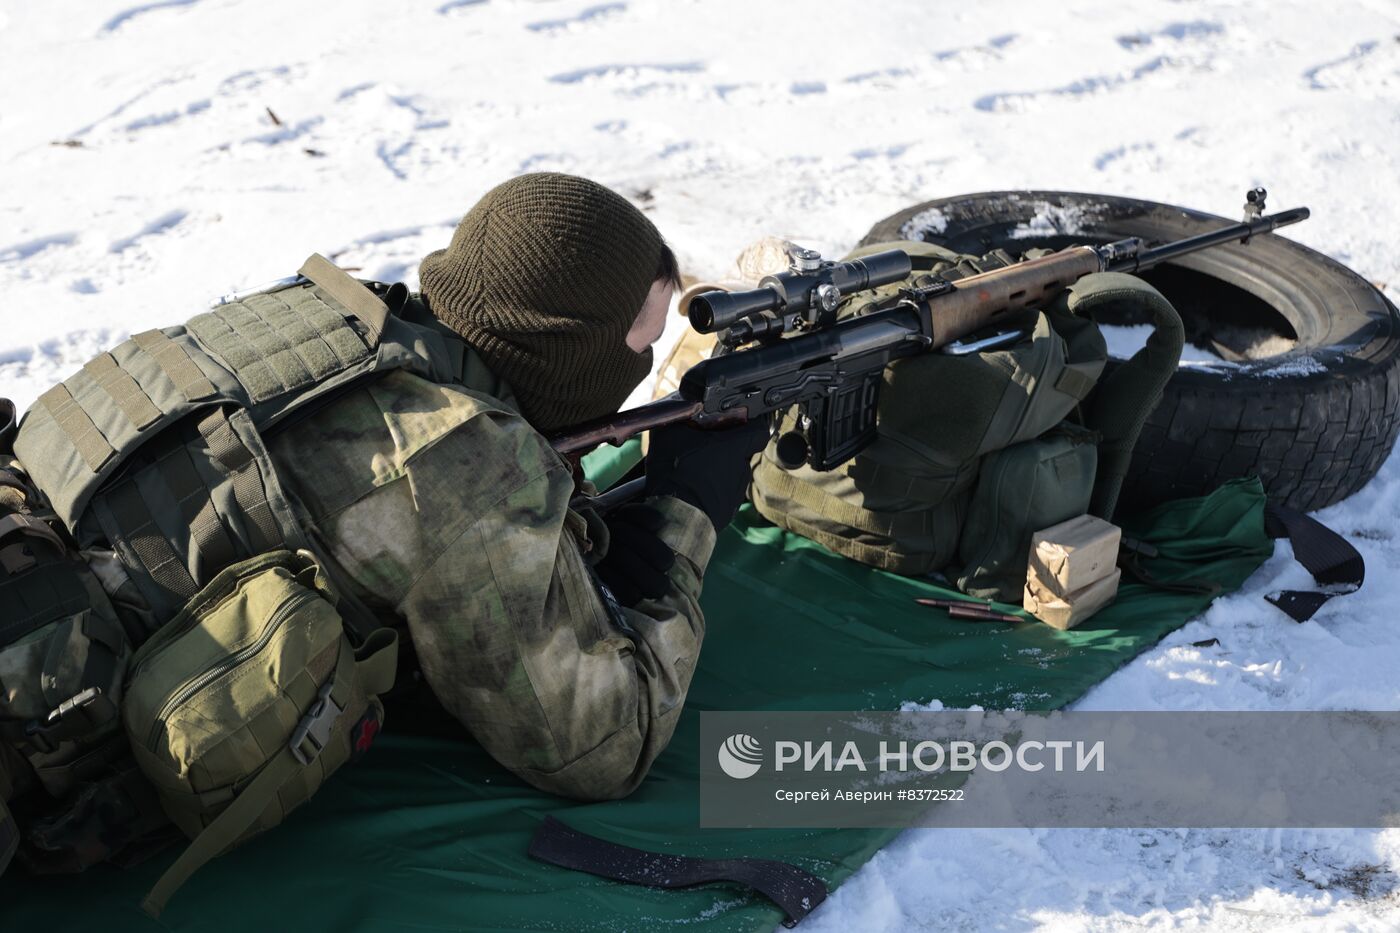 Учения снайперов батальона "Эспаньола" в ДНР